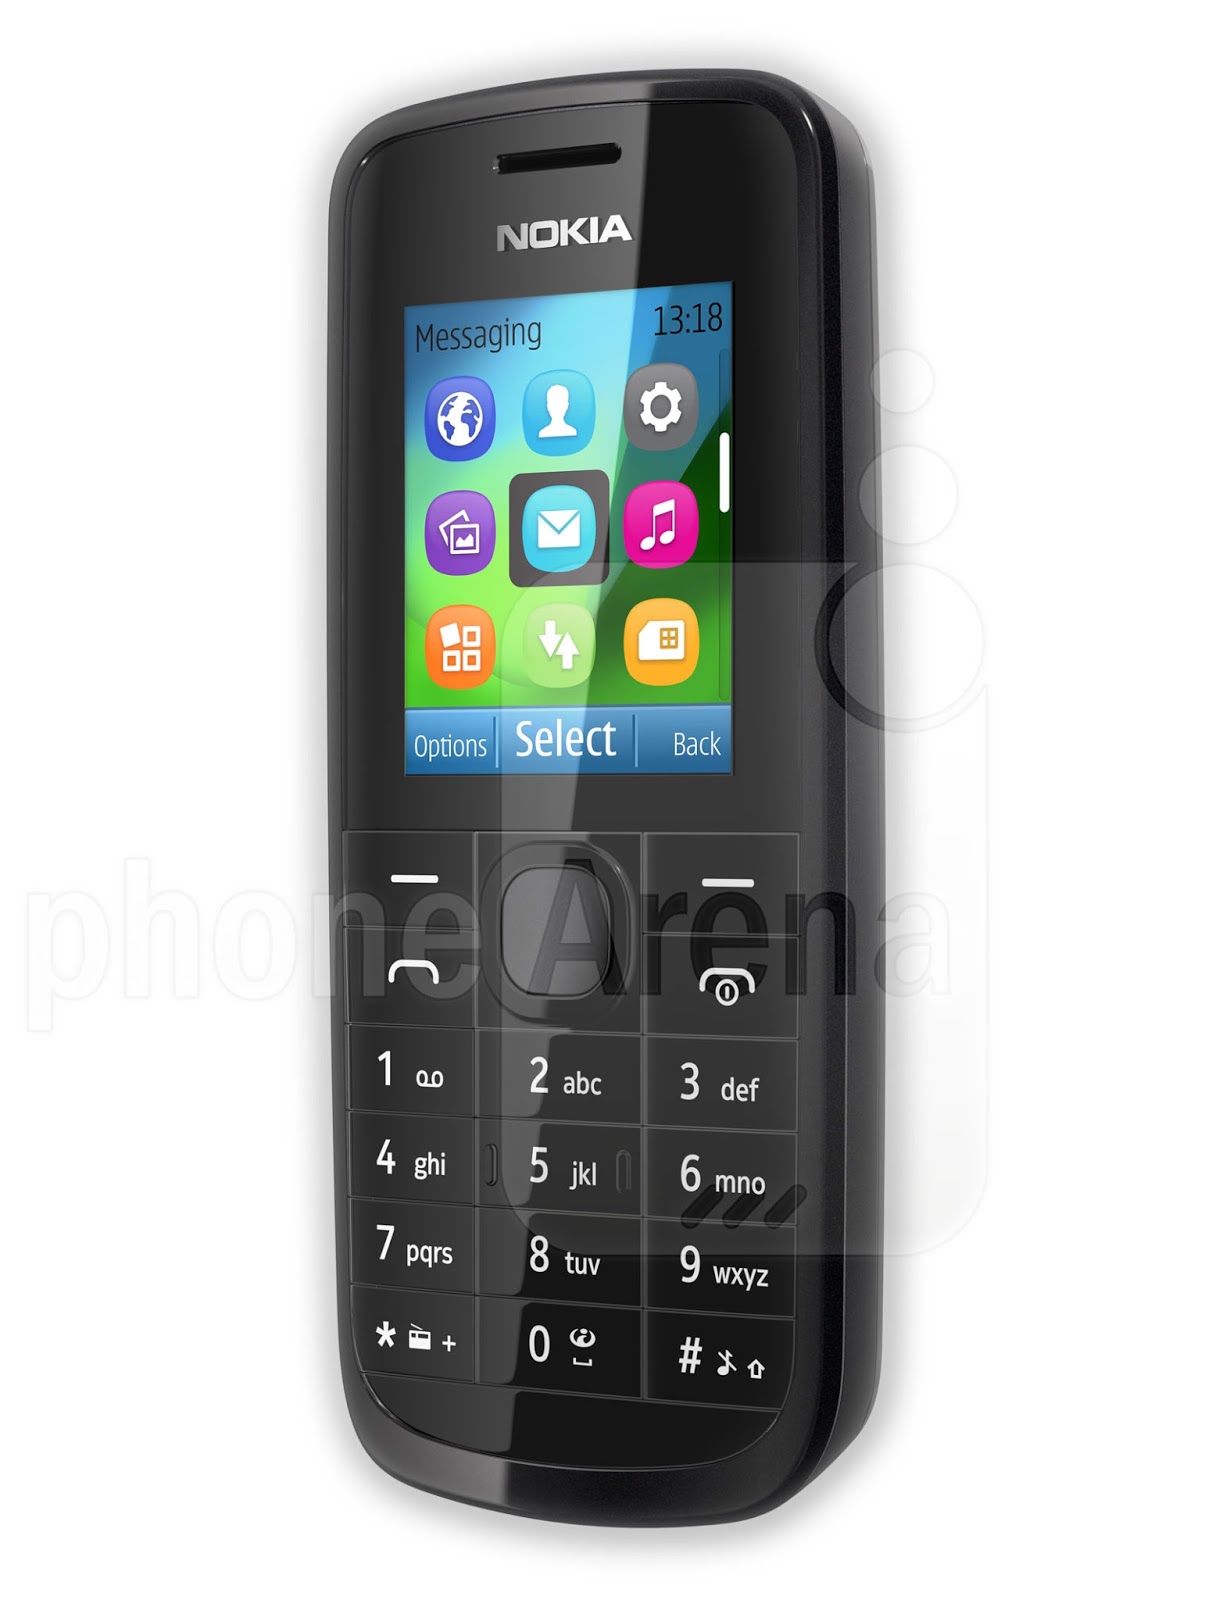 Nokia e63 review